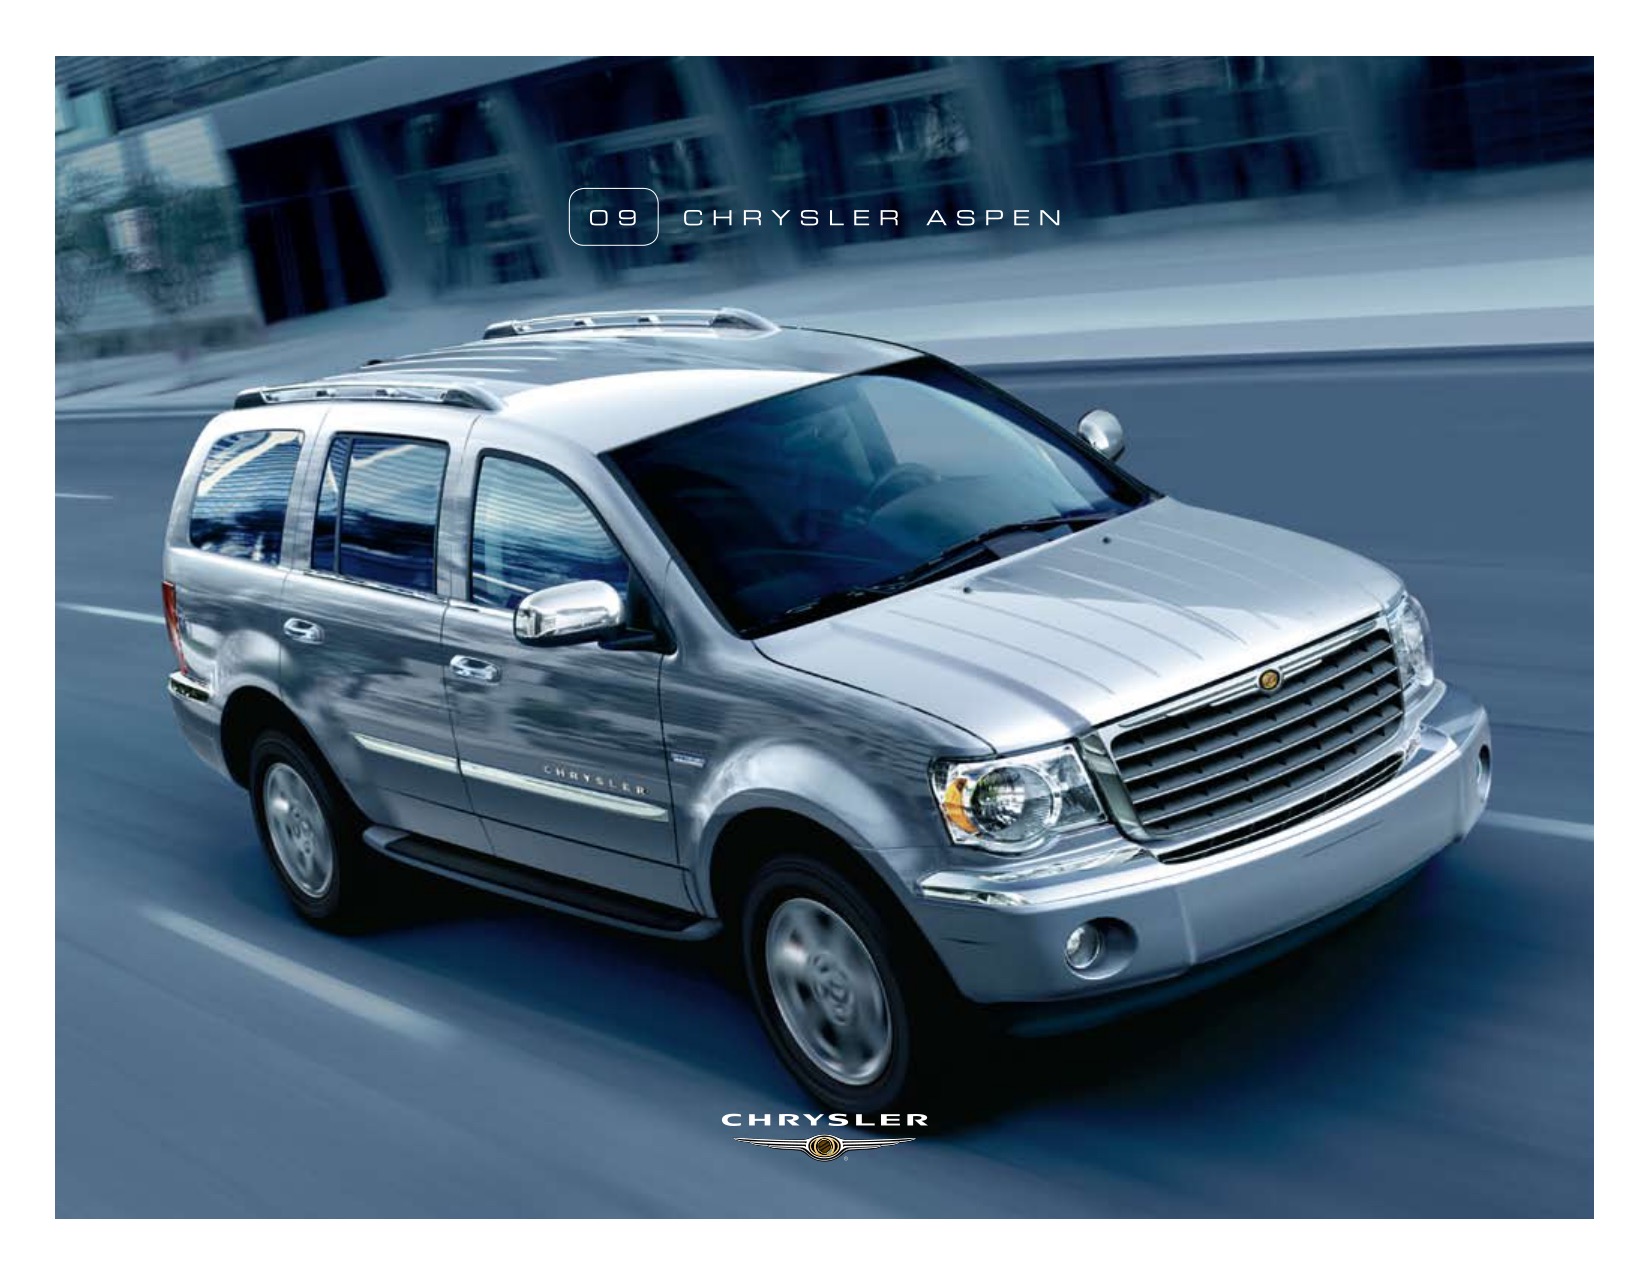 2009 Chrysler Aspen Brochure